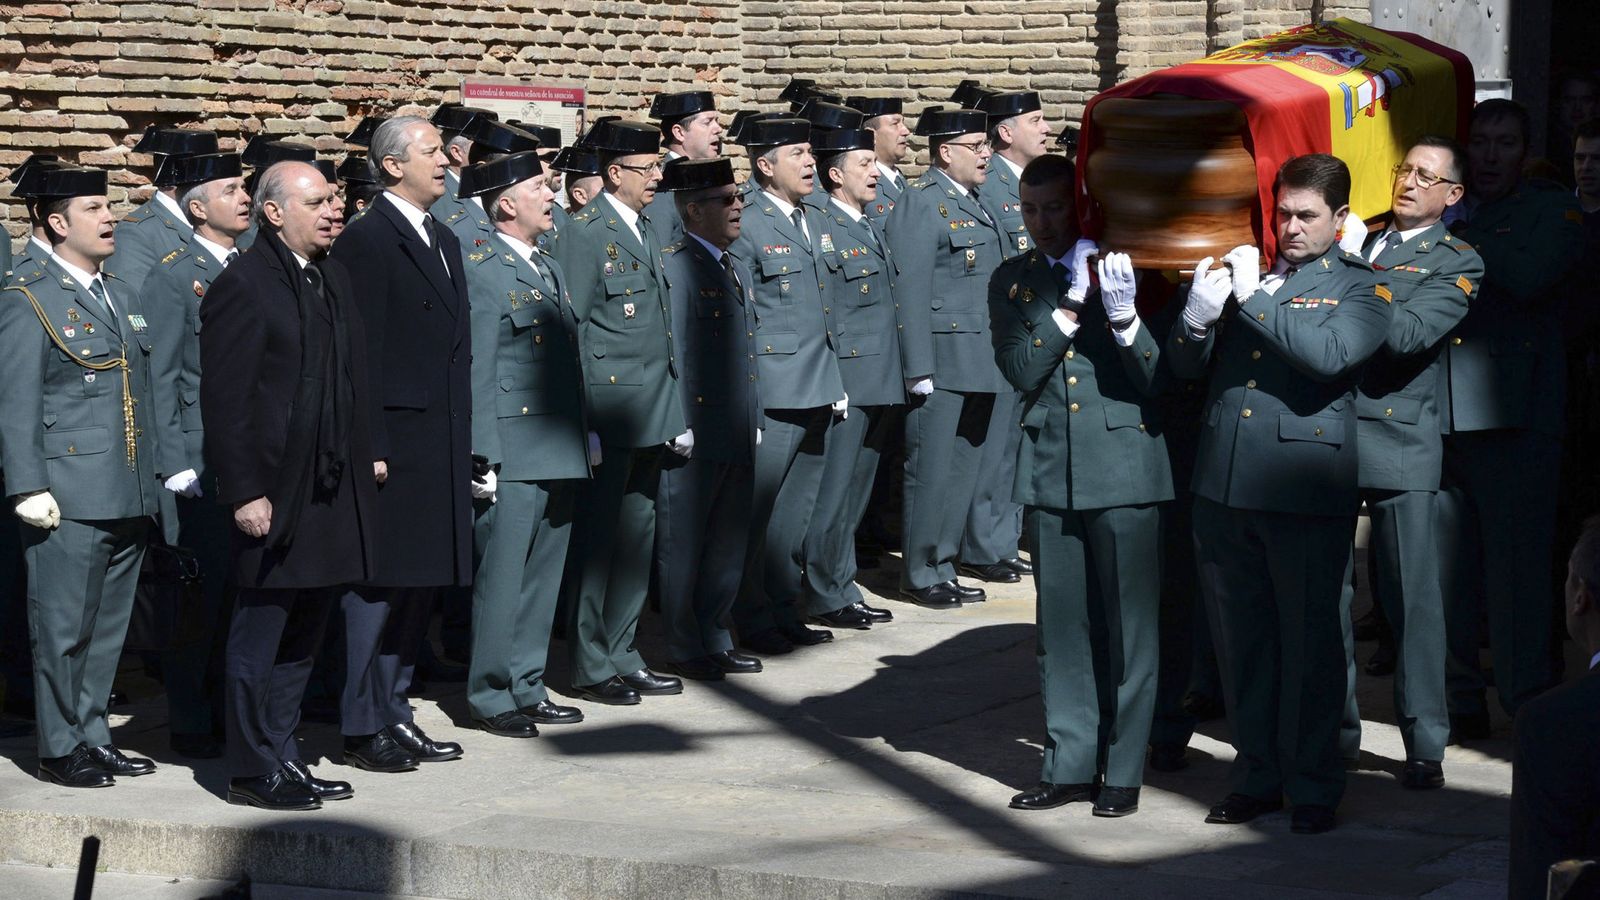 Foto: Imagen del funeral de José Antonio Pérez, el Guardia Civil atropellado (Javier Blasco/Efe)